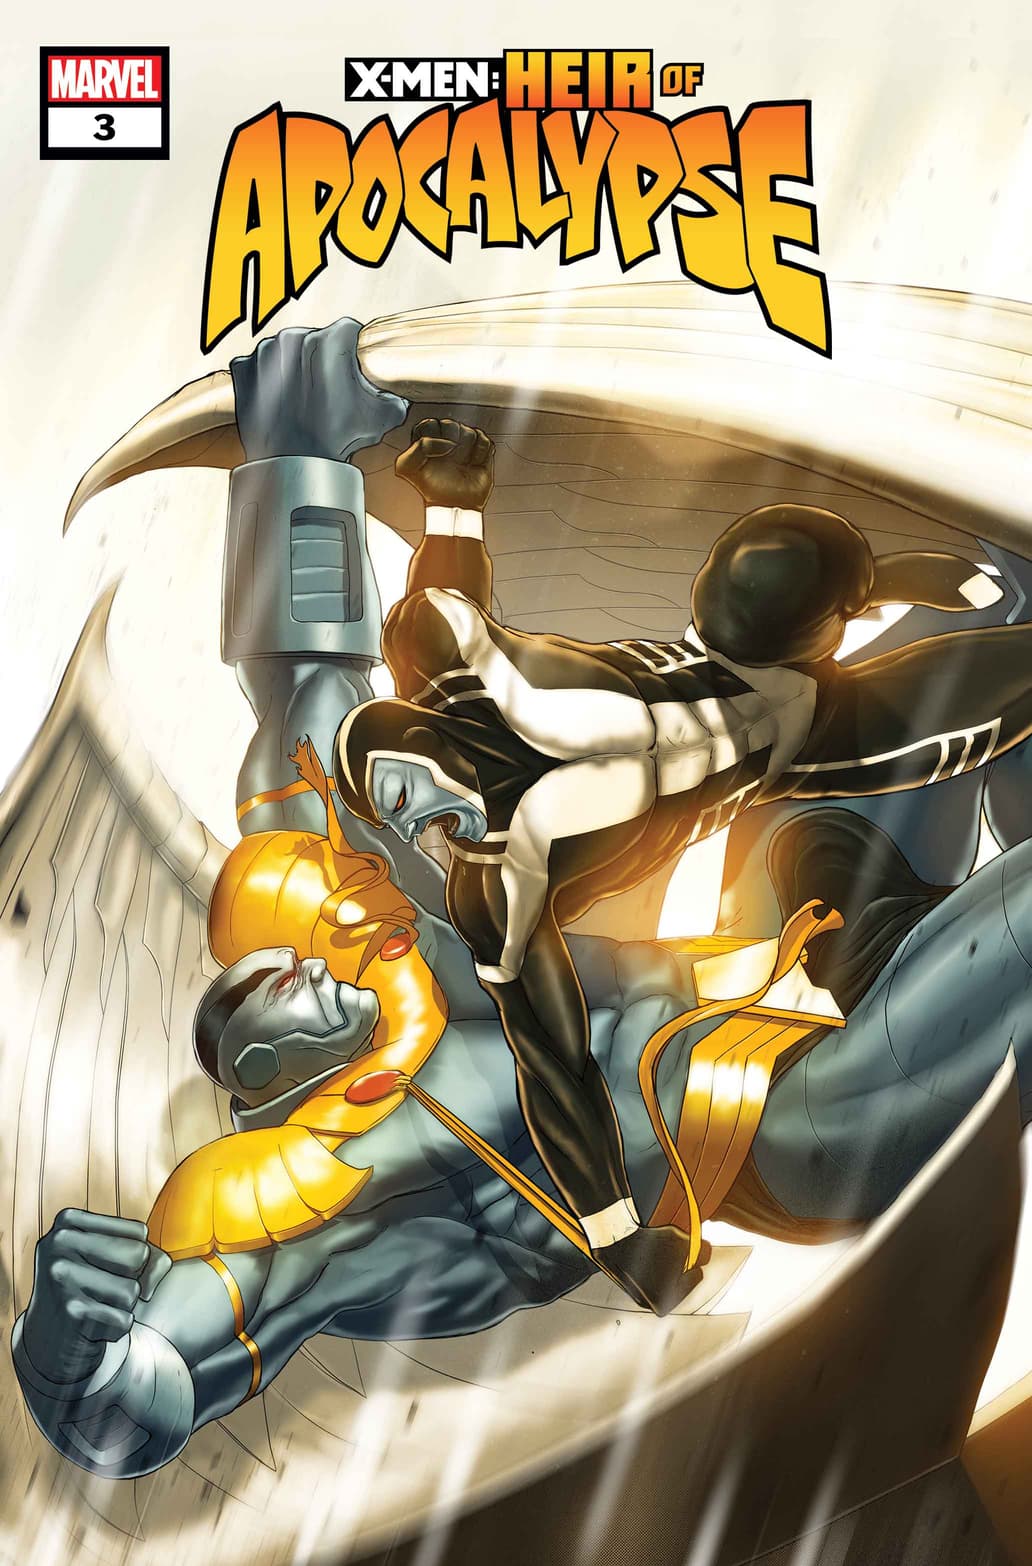 X-MEN: HEIR OF APOCALYPSE #3 cover by Dotun Akande